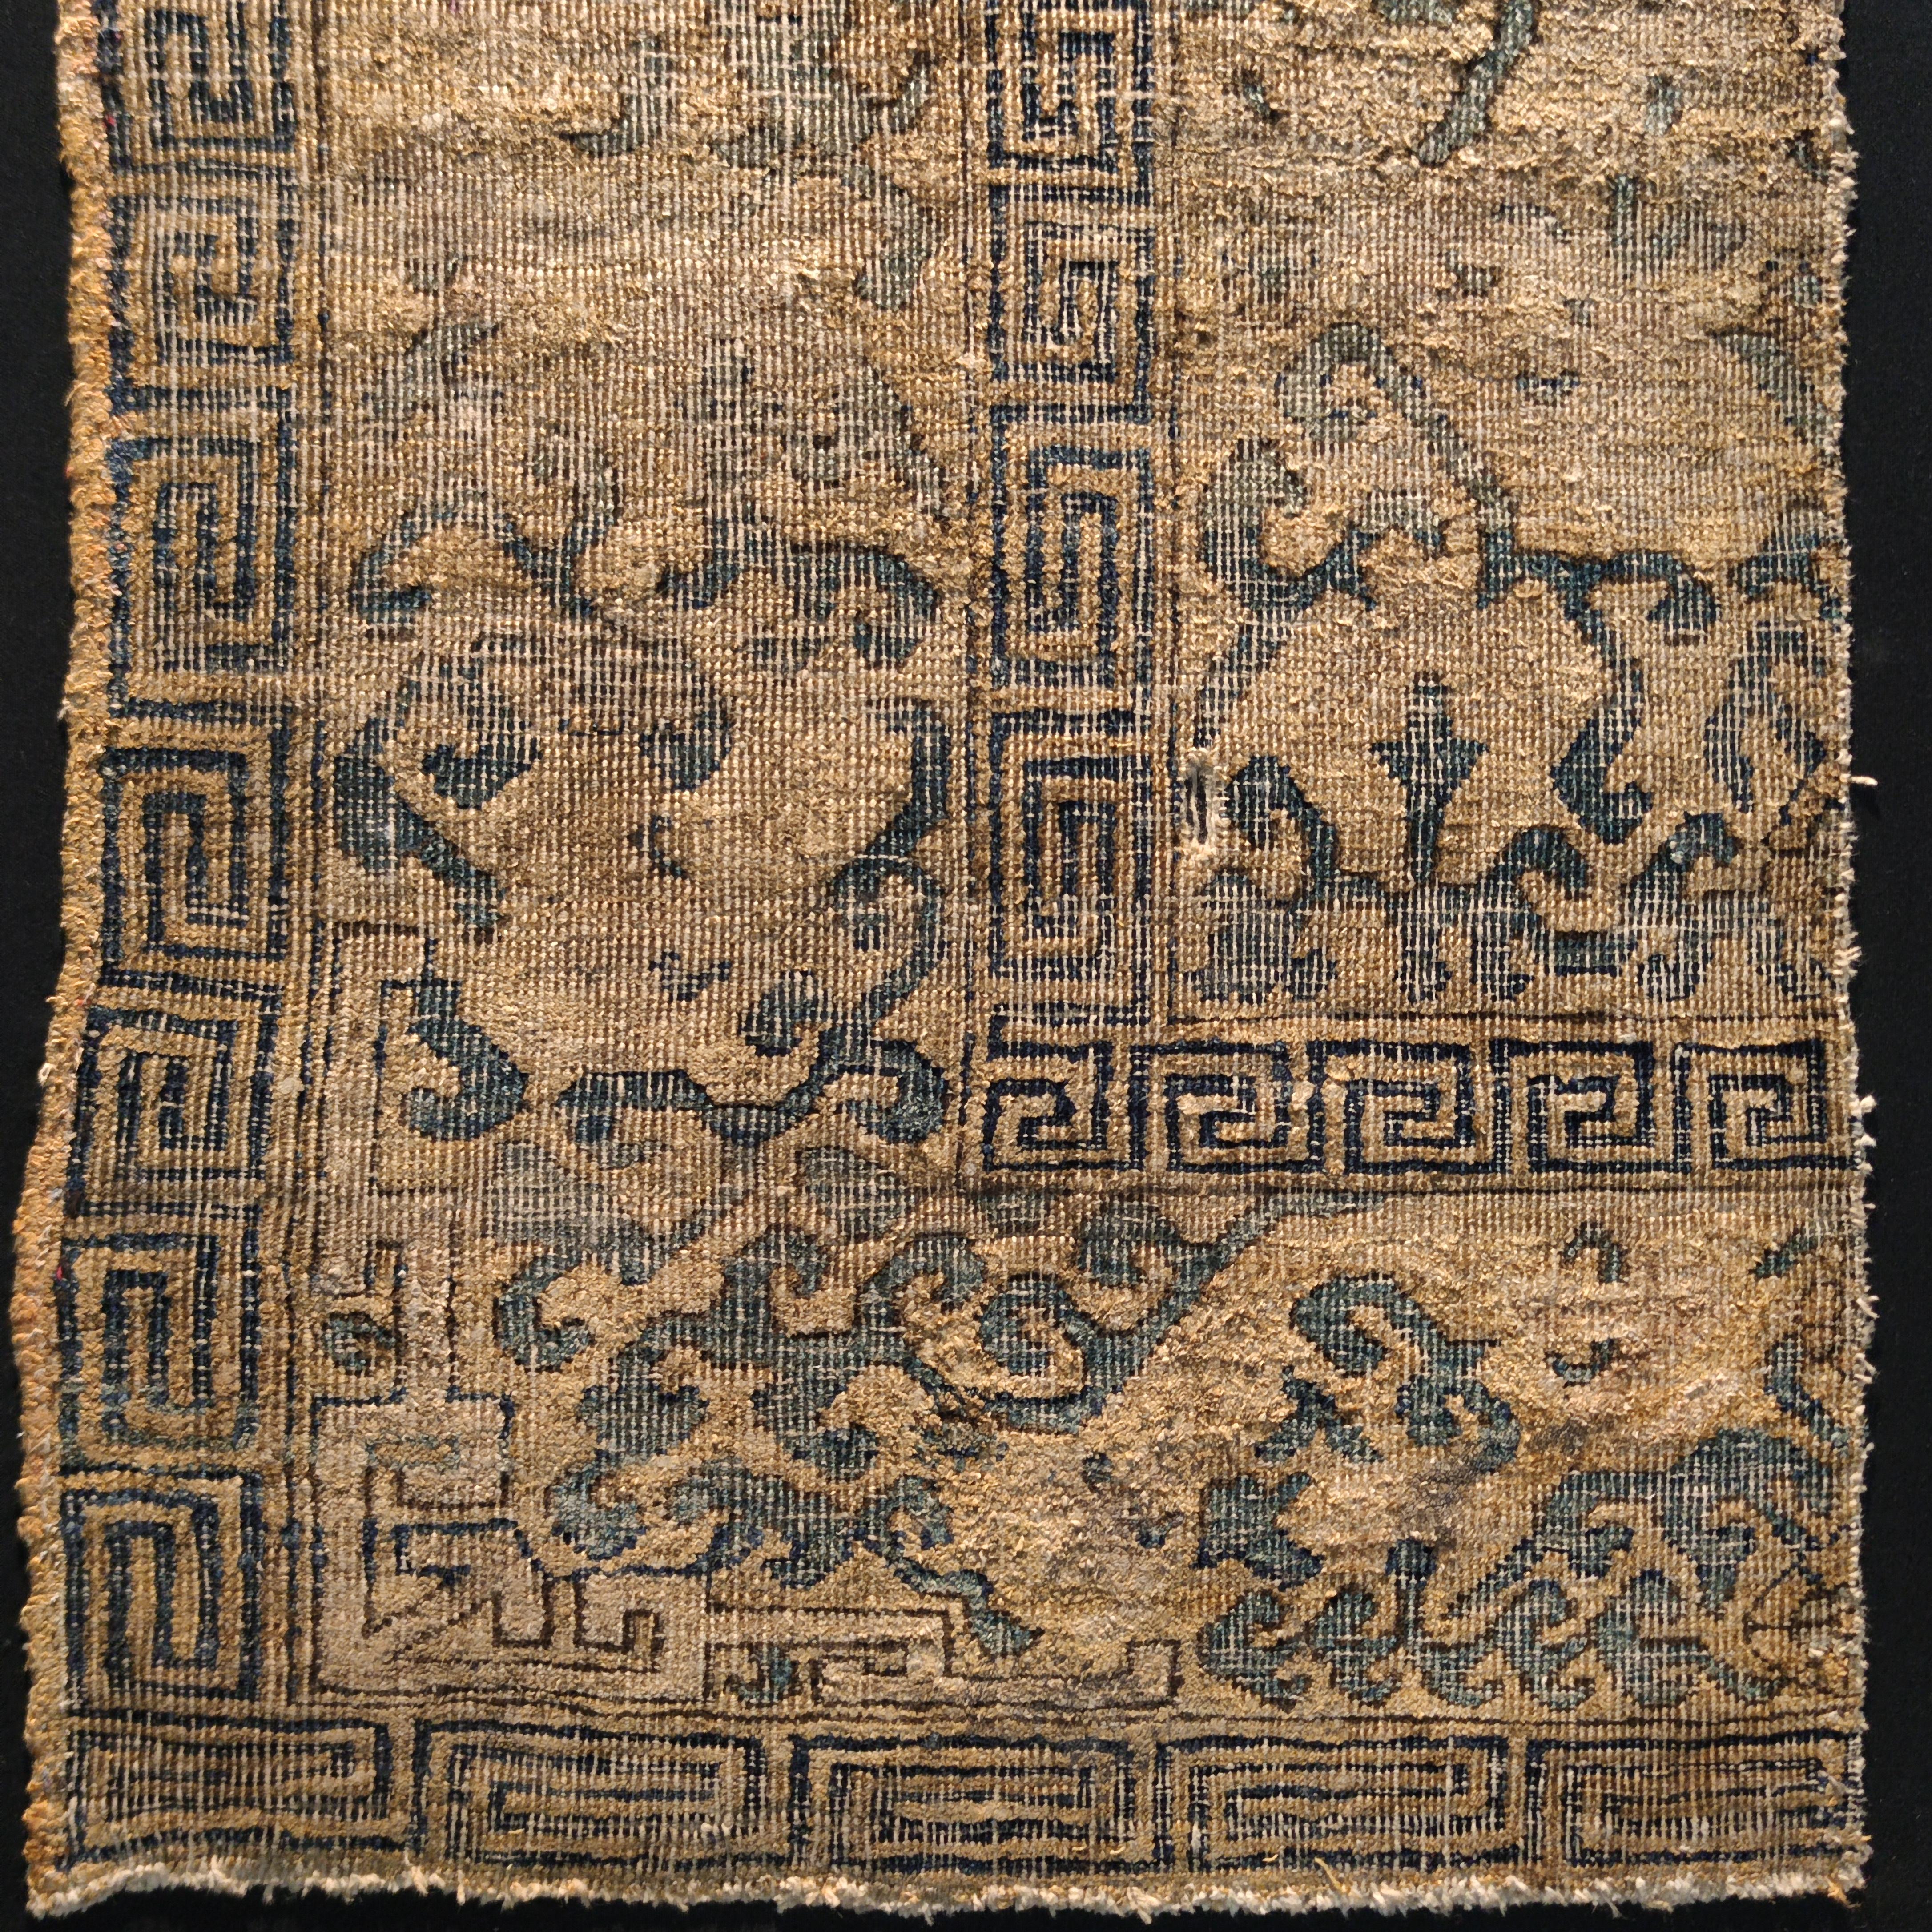 Dieses sehr seltene Fragment gehört zu einer besonderen Gruppe von zwölf seidenen Kashgar-Thronbezügen, die alle ein ähnliches Design und eine ähnliche Farbgebung aufweisen und sich durch eine extrem feine Knüpfung auszeichnen. Von der Gruppe